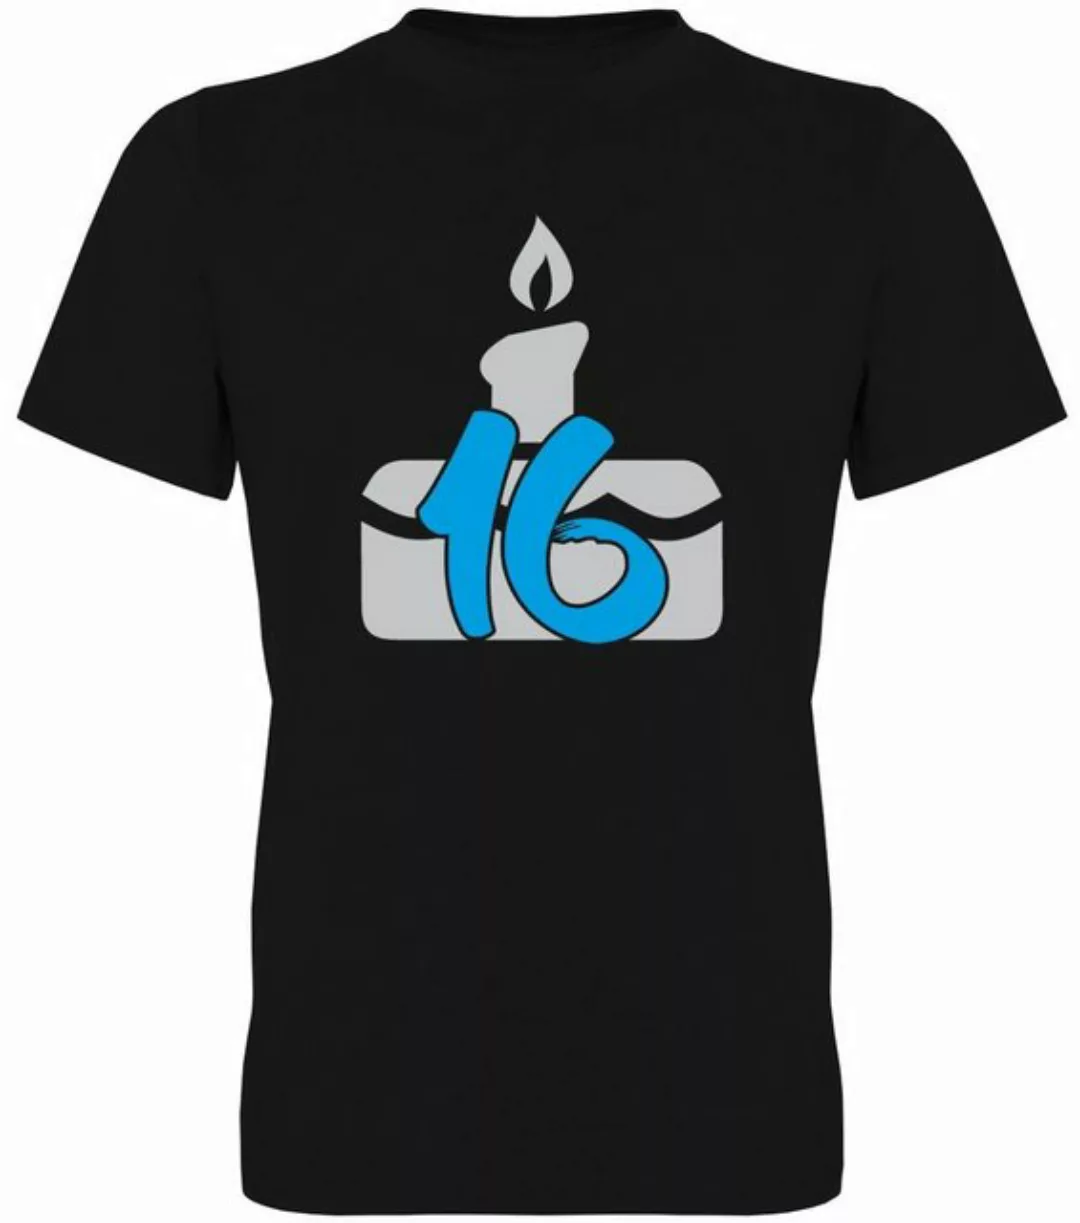 G-graphics T-Shirt 16 – Geburtstagstorte Herren T-Shirt, zum 16ten Geburtst günstig online kaufen